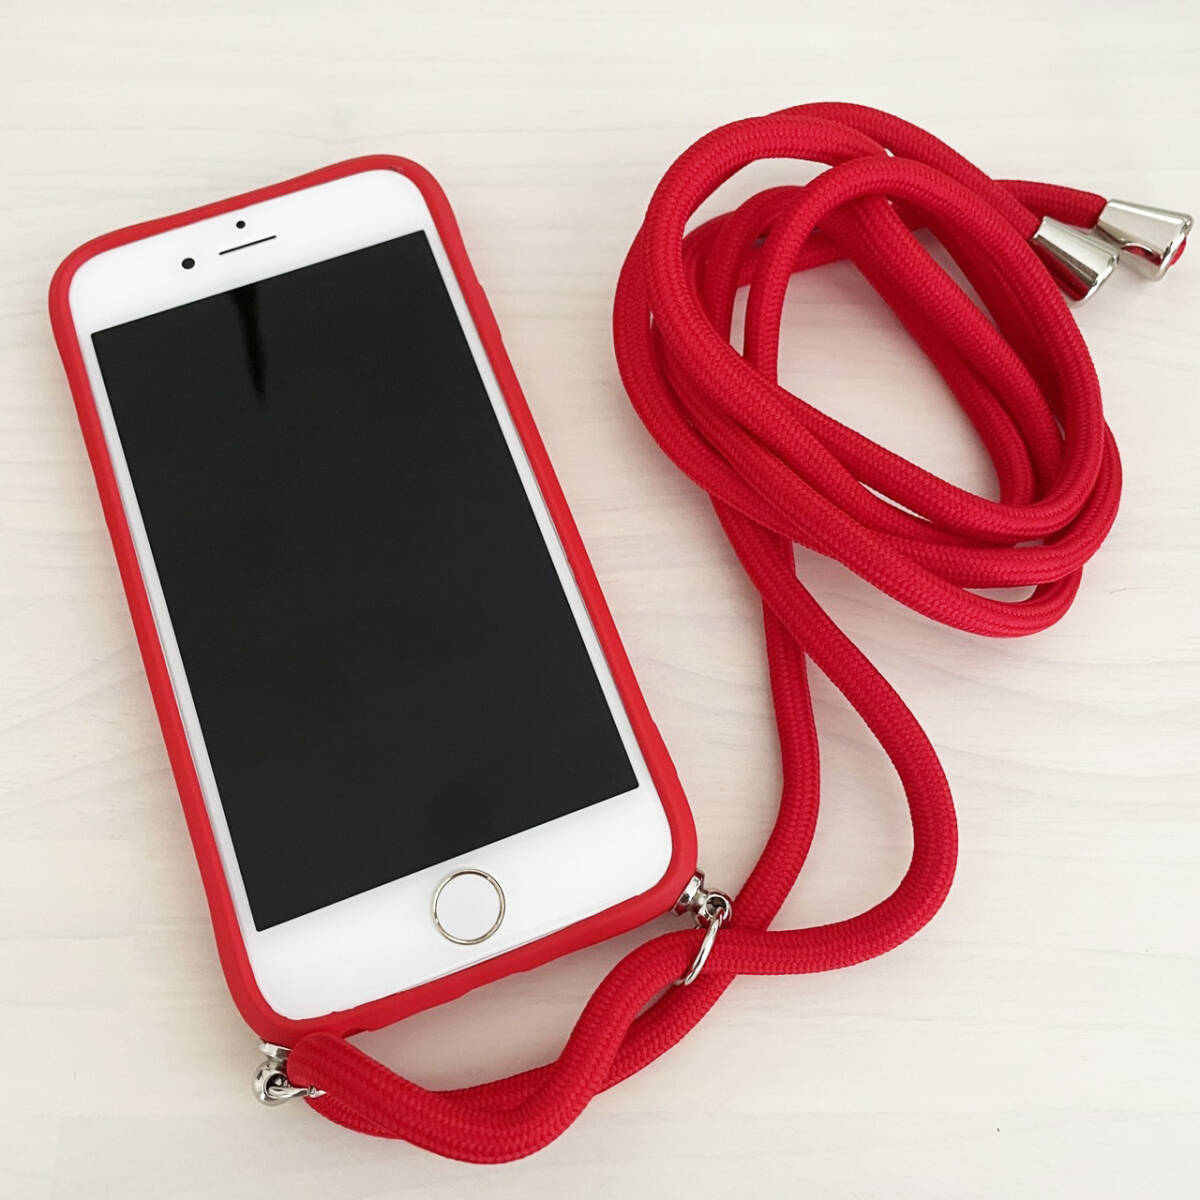 訳あり iPhone 6 6s 7 8 SE (第2世代/第3世代) SE2 SE3 ケース シリコン スマホ ショルダー 肩掛け 紐付き 収納 レッド 赤色 アイフォン